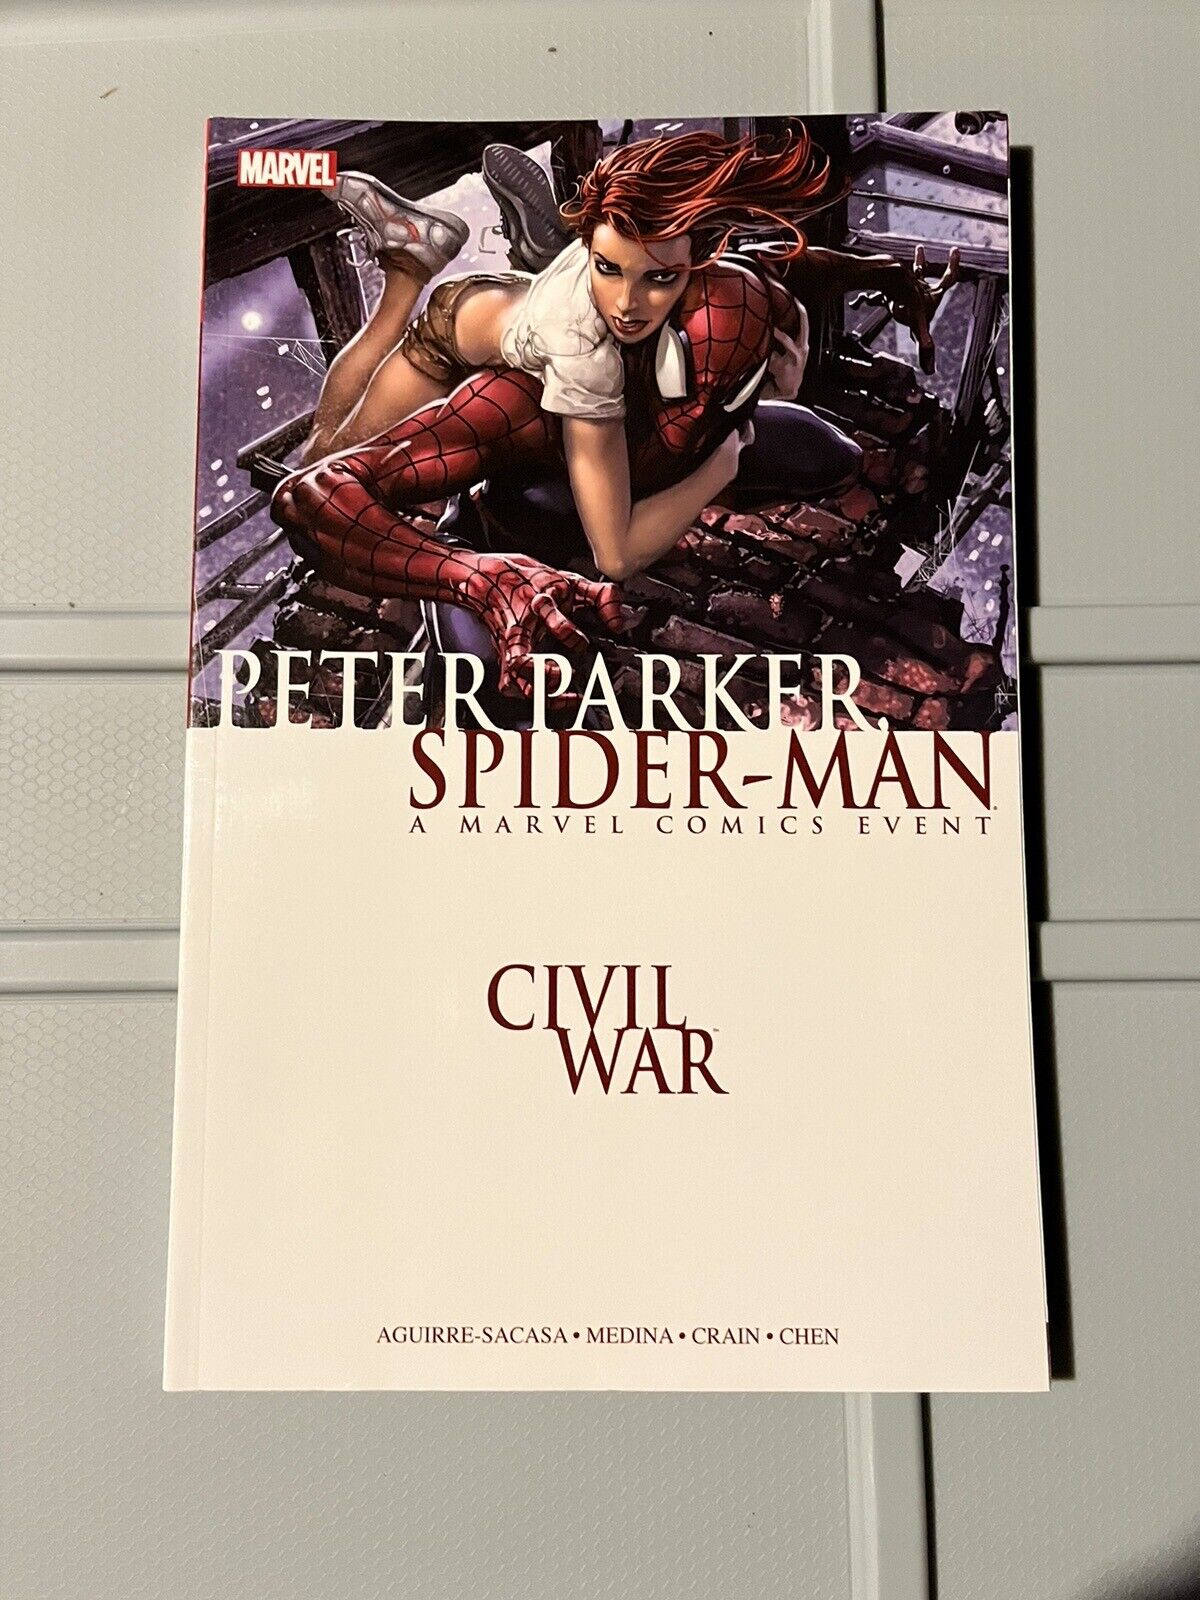 PETER PARKER, SPIDER-MAN / CIVIL WAR 2016 MARVEL SOFTCOVER GRAPHIC NOVEL